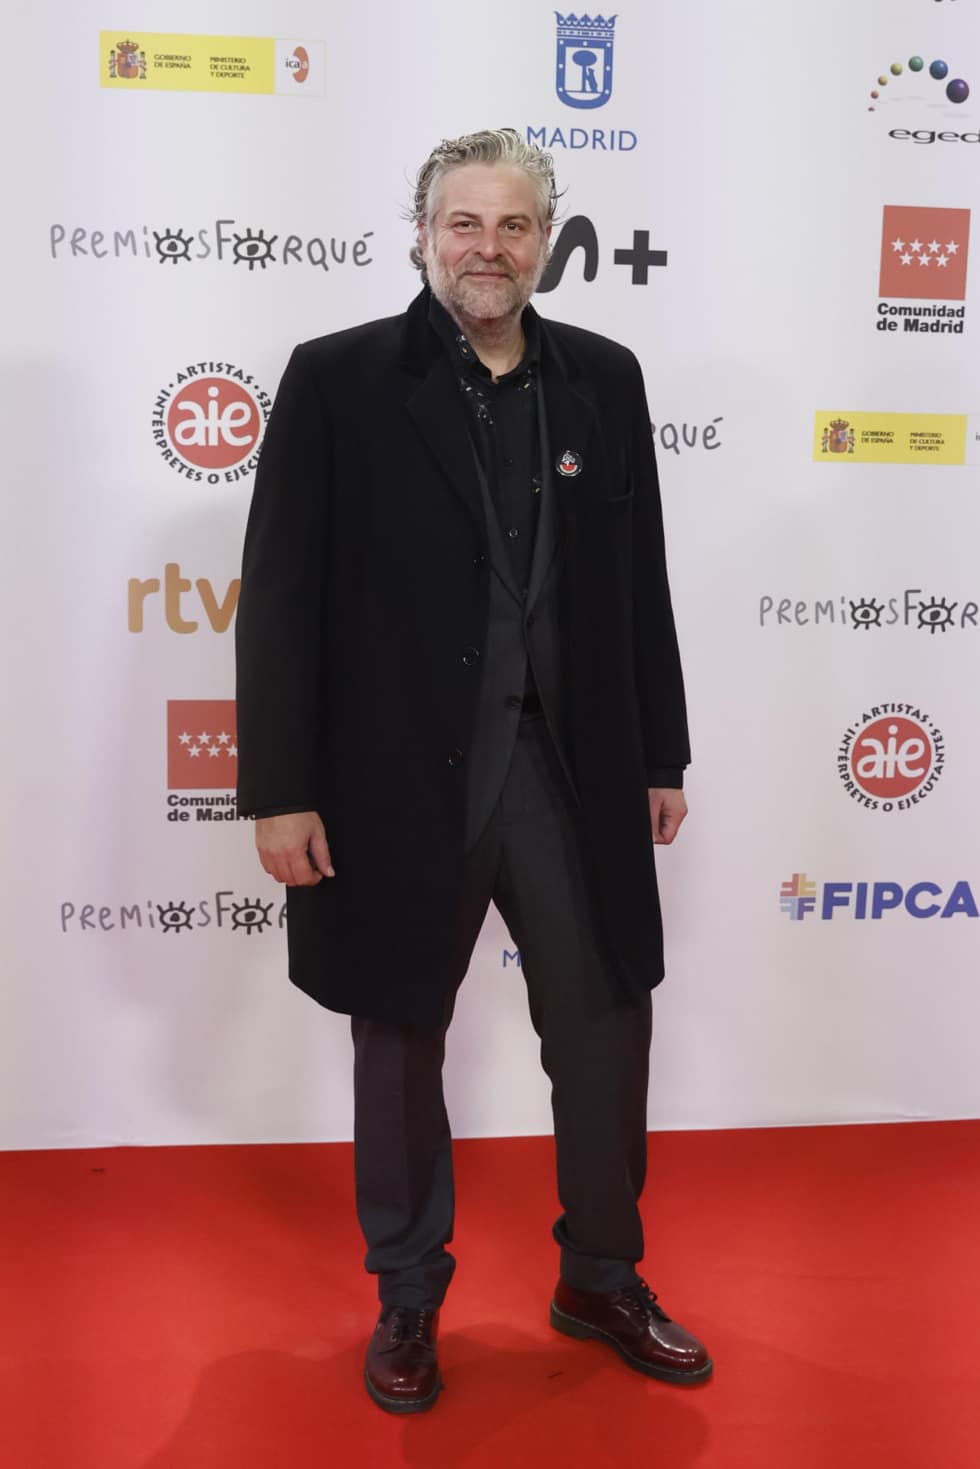 El actor y guionista Raúl Cimas, vestido entero de negro, también ha lucido una pegatina en apoyo a Gaza en los premios Forqué